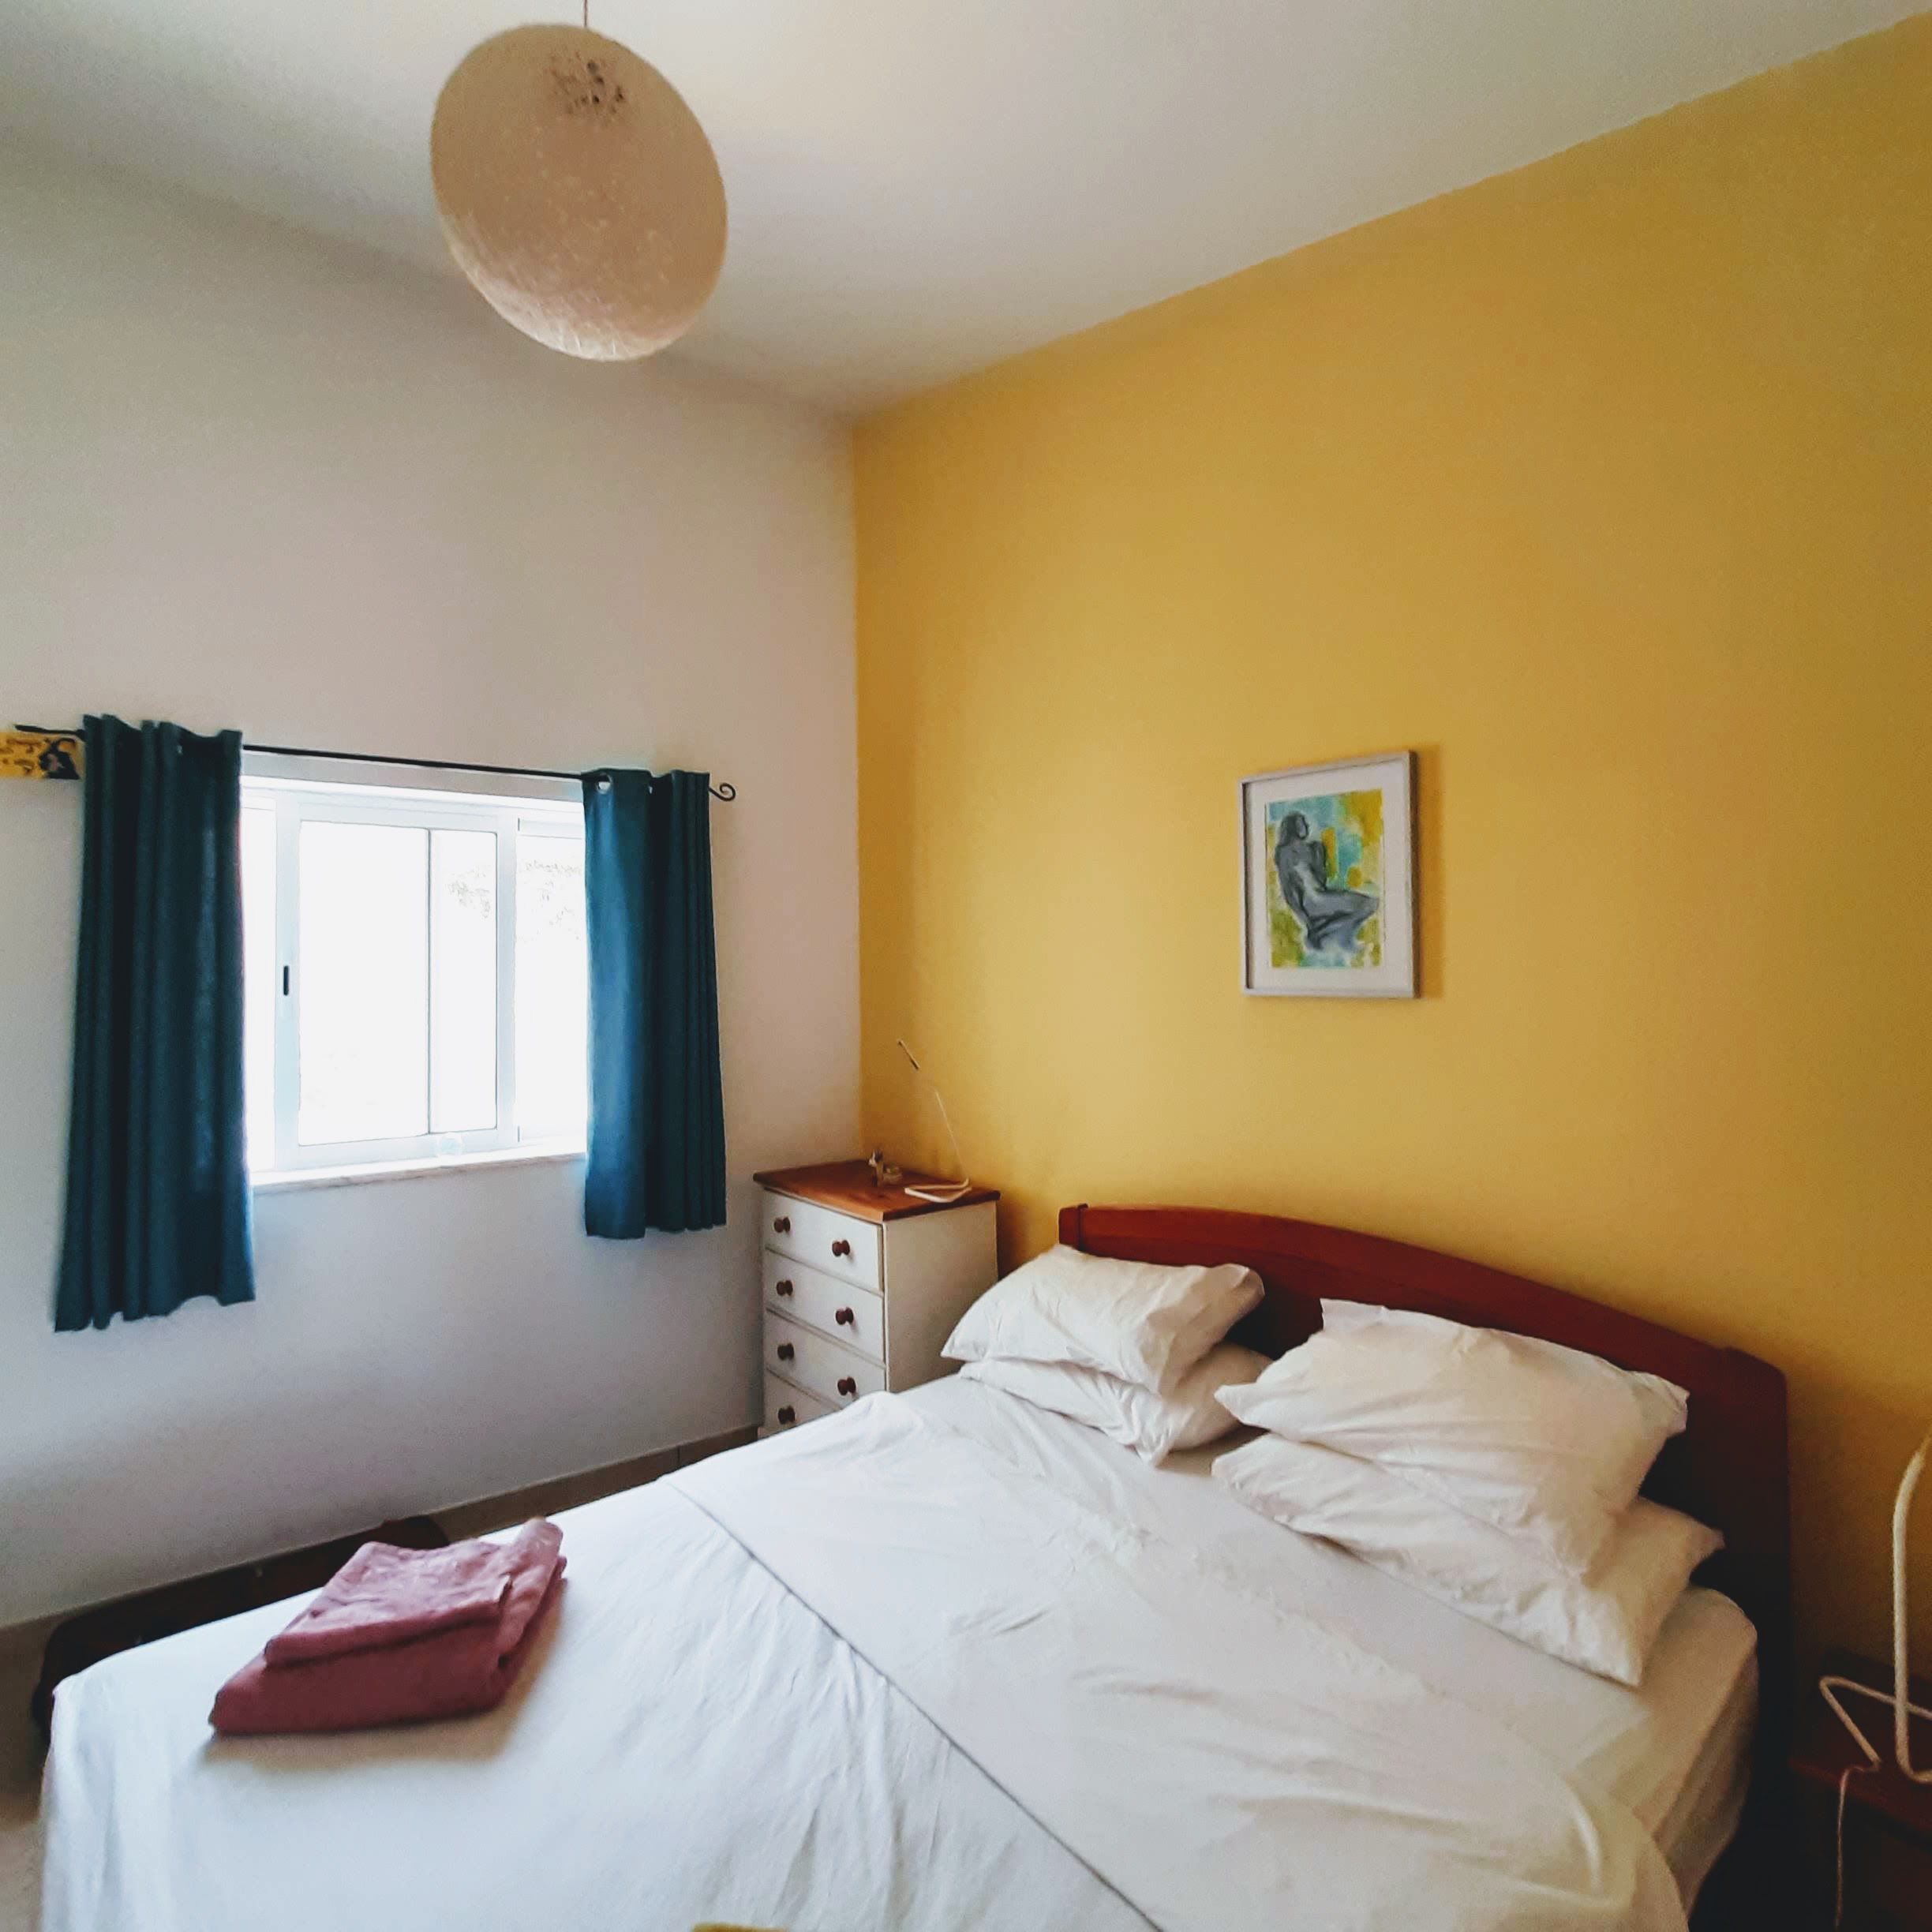 Annexe/bedroom 3